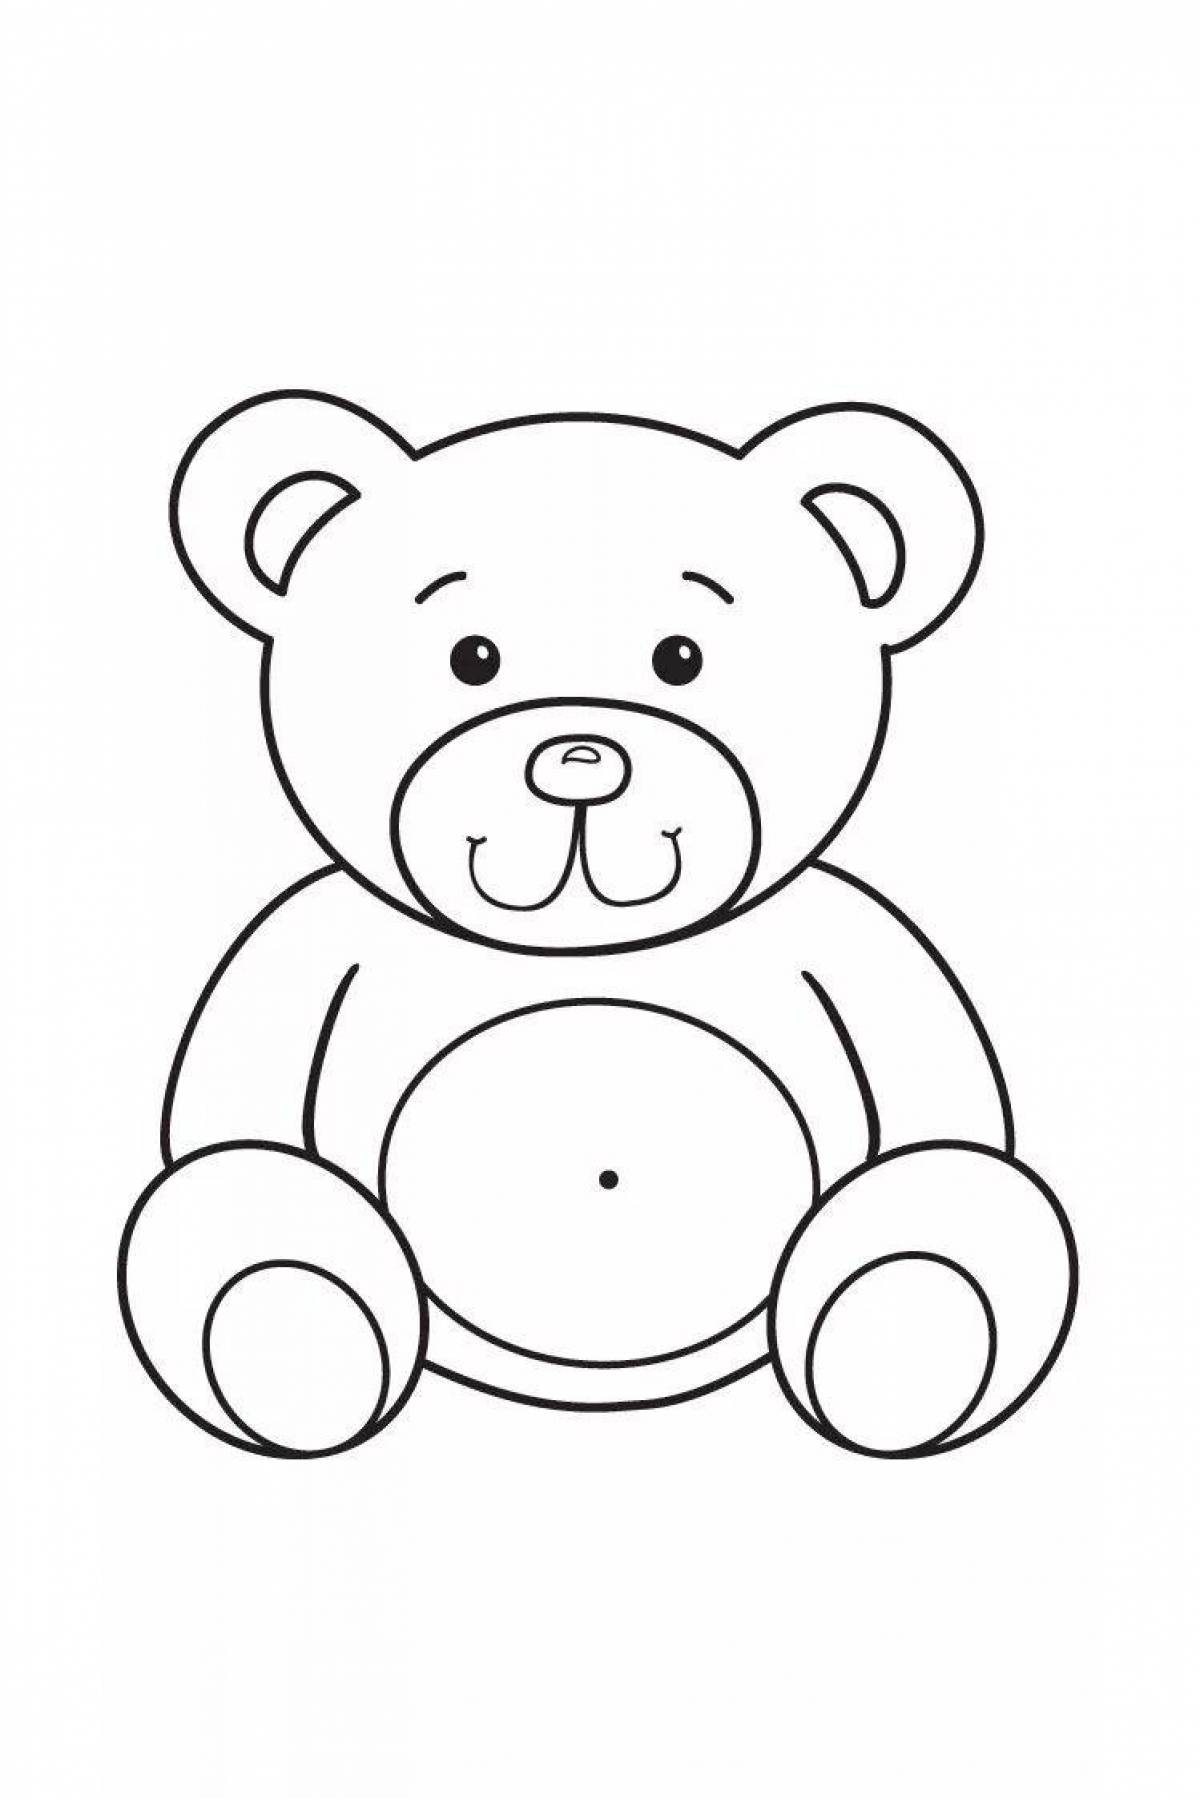 Раскраска медведь для детей 2 3 лет. Раскраски детские игрушки. Медведь раскраска для детей. Медвежонок раскраска для детей. Медвежонок картинка для детей раскраска.